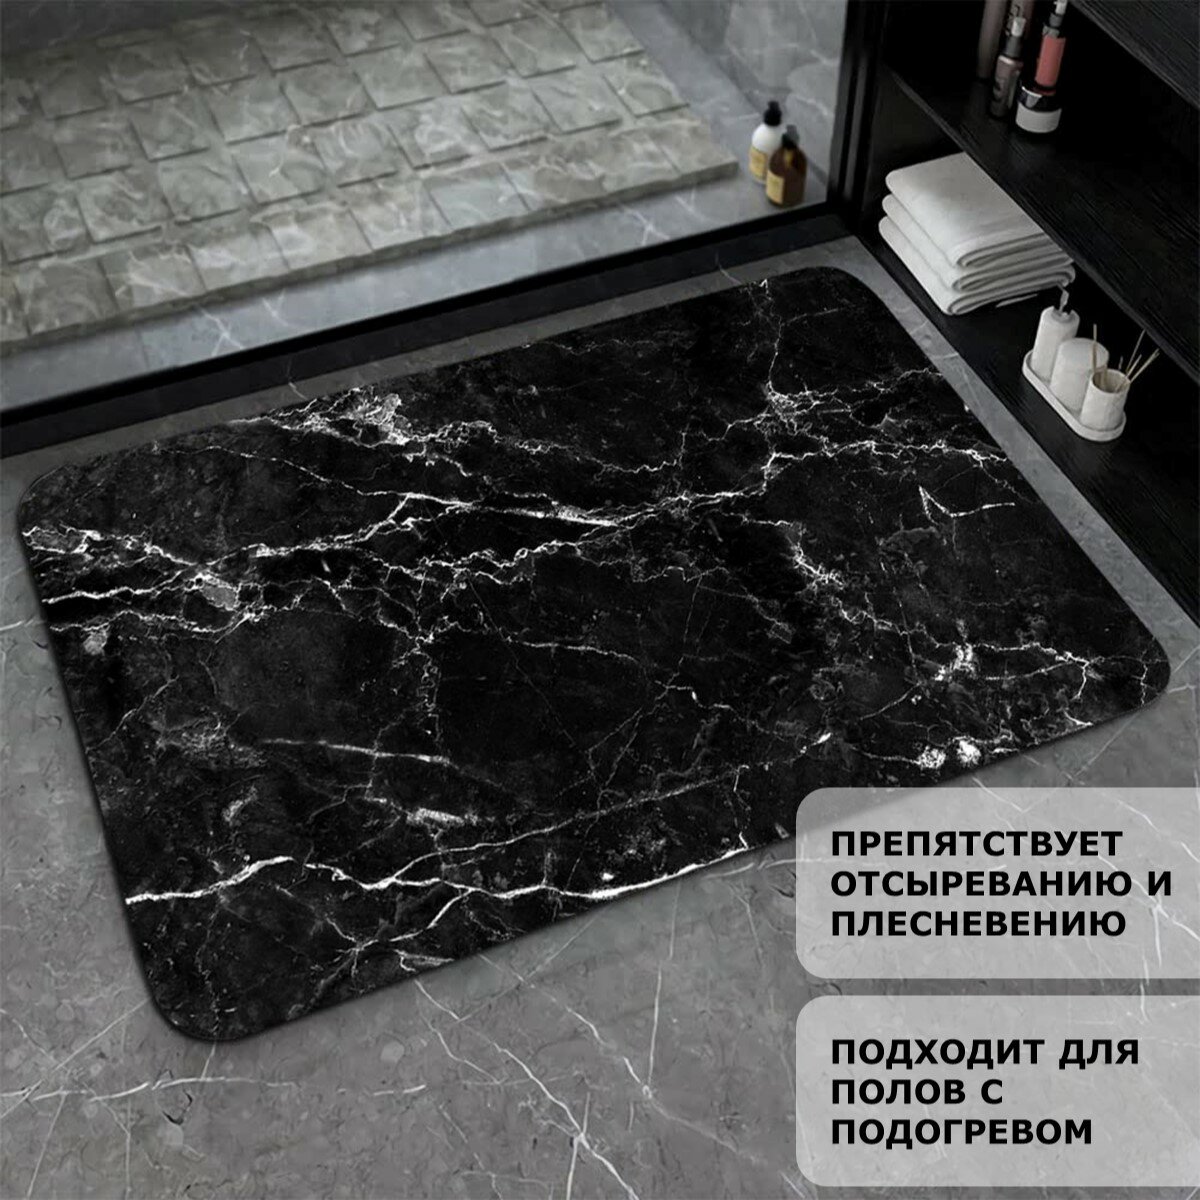 Коврик для ванной и туалета Ridberg Marble 50*80 см, влаговпитывающий, быстросохнущий, противоскользящий, прикроватный коврик, черный